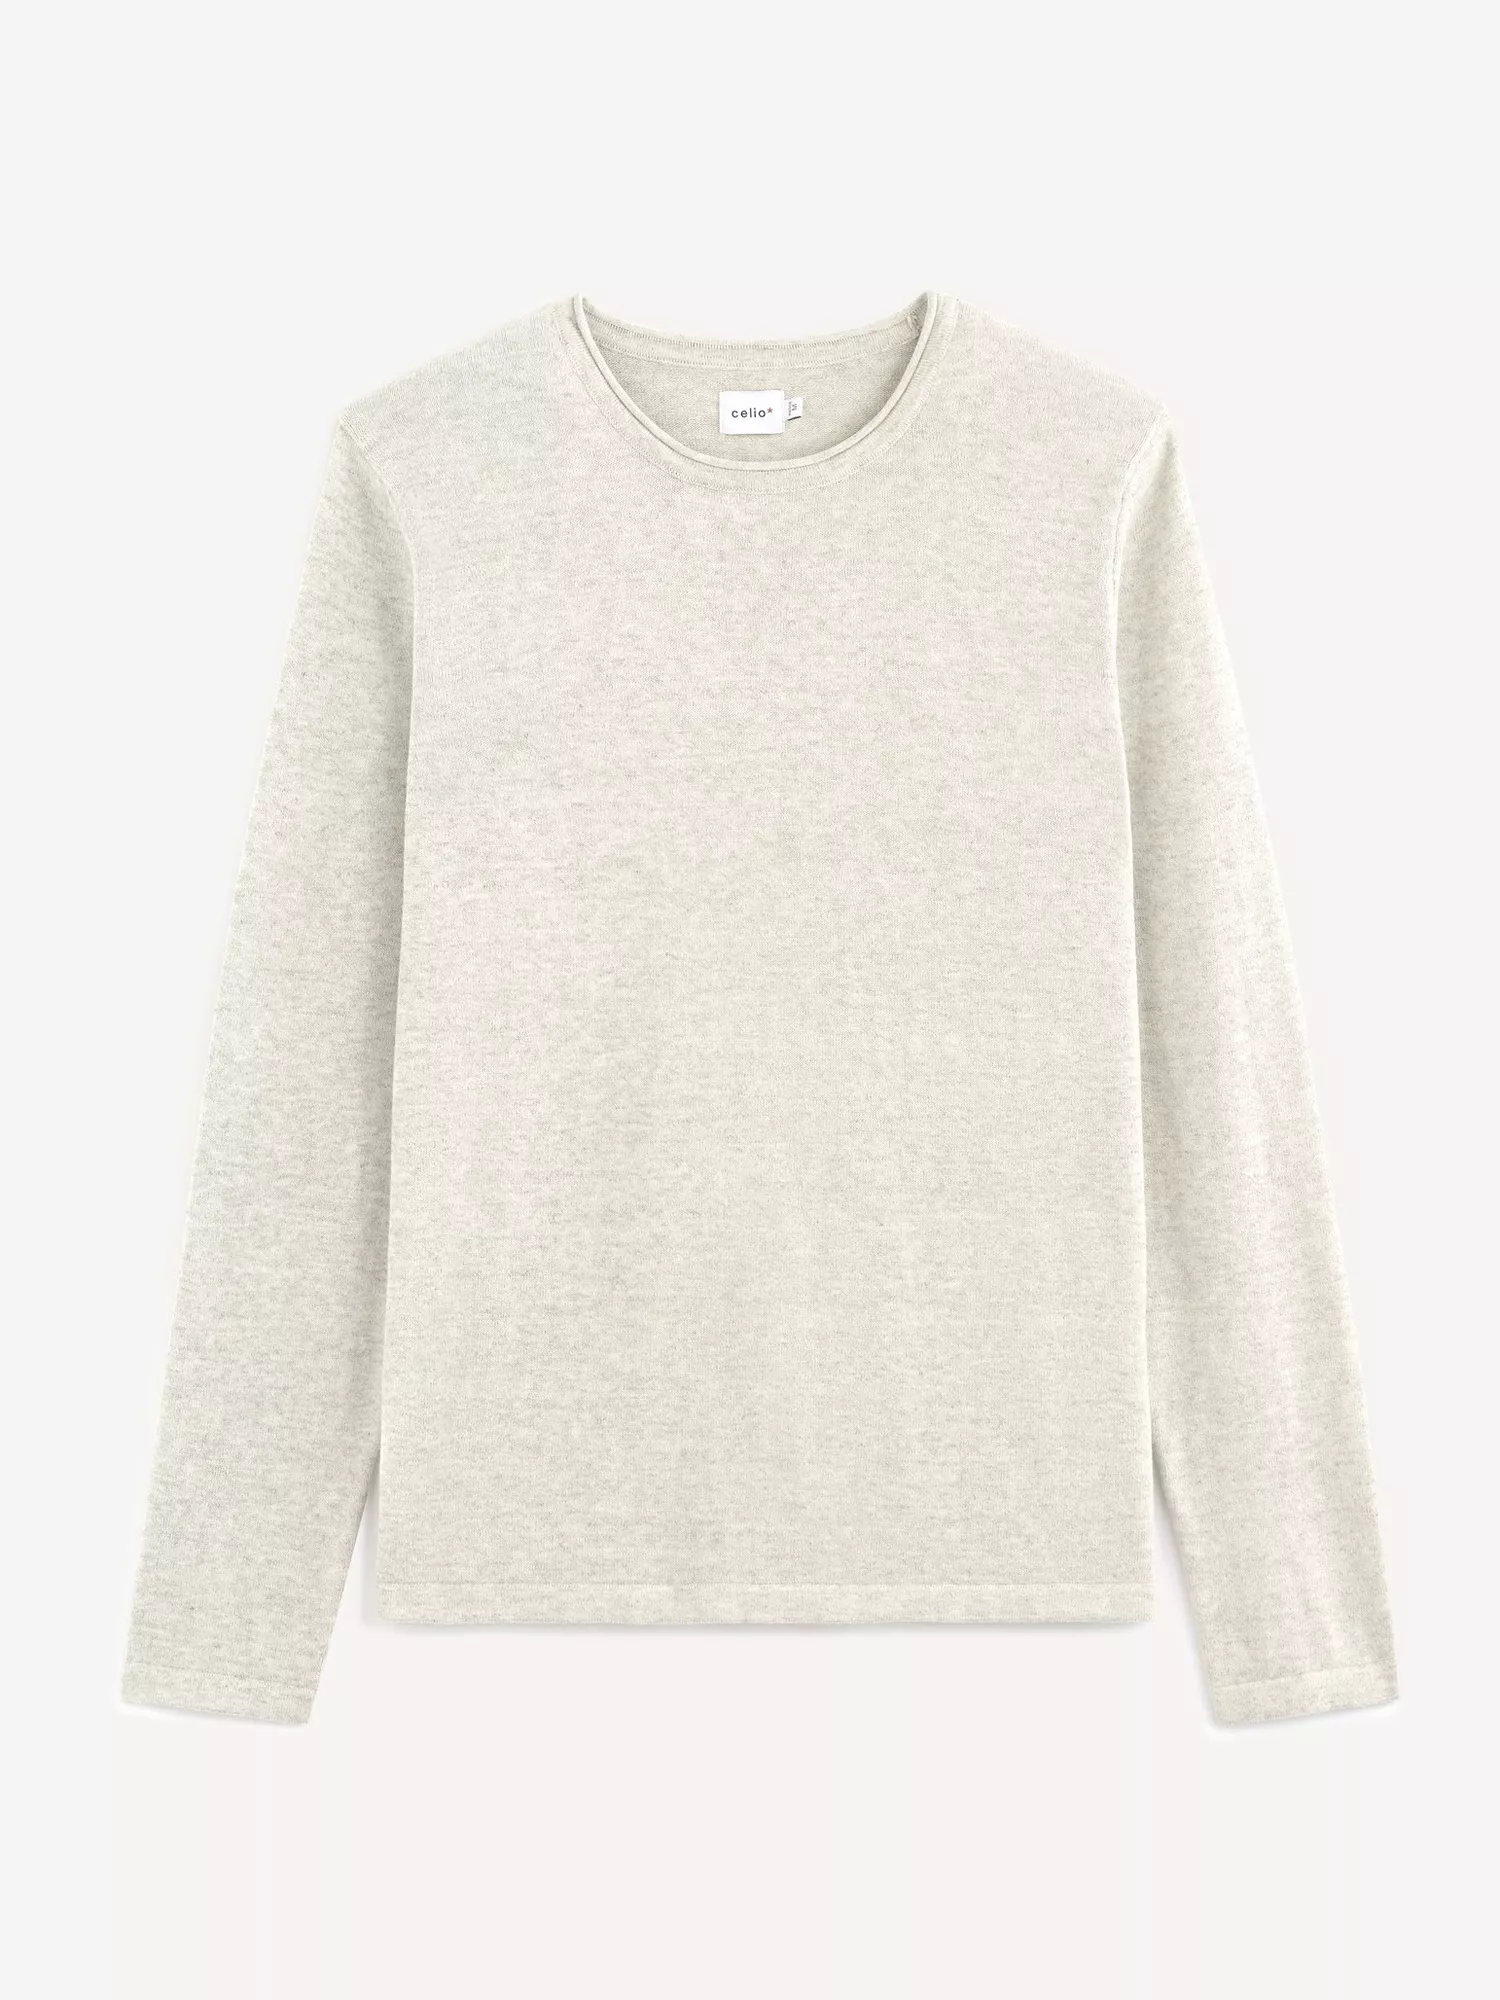 Hladký pletený svetr Tegenial (4)